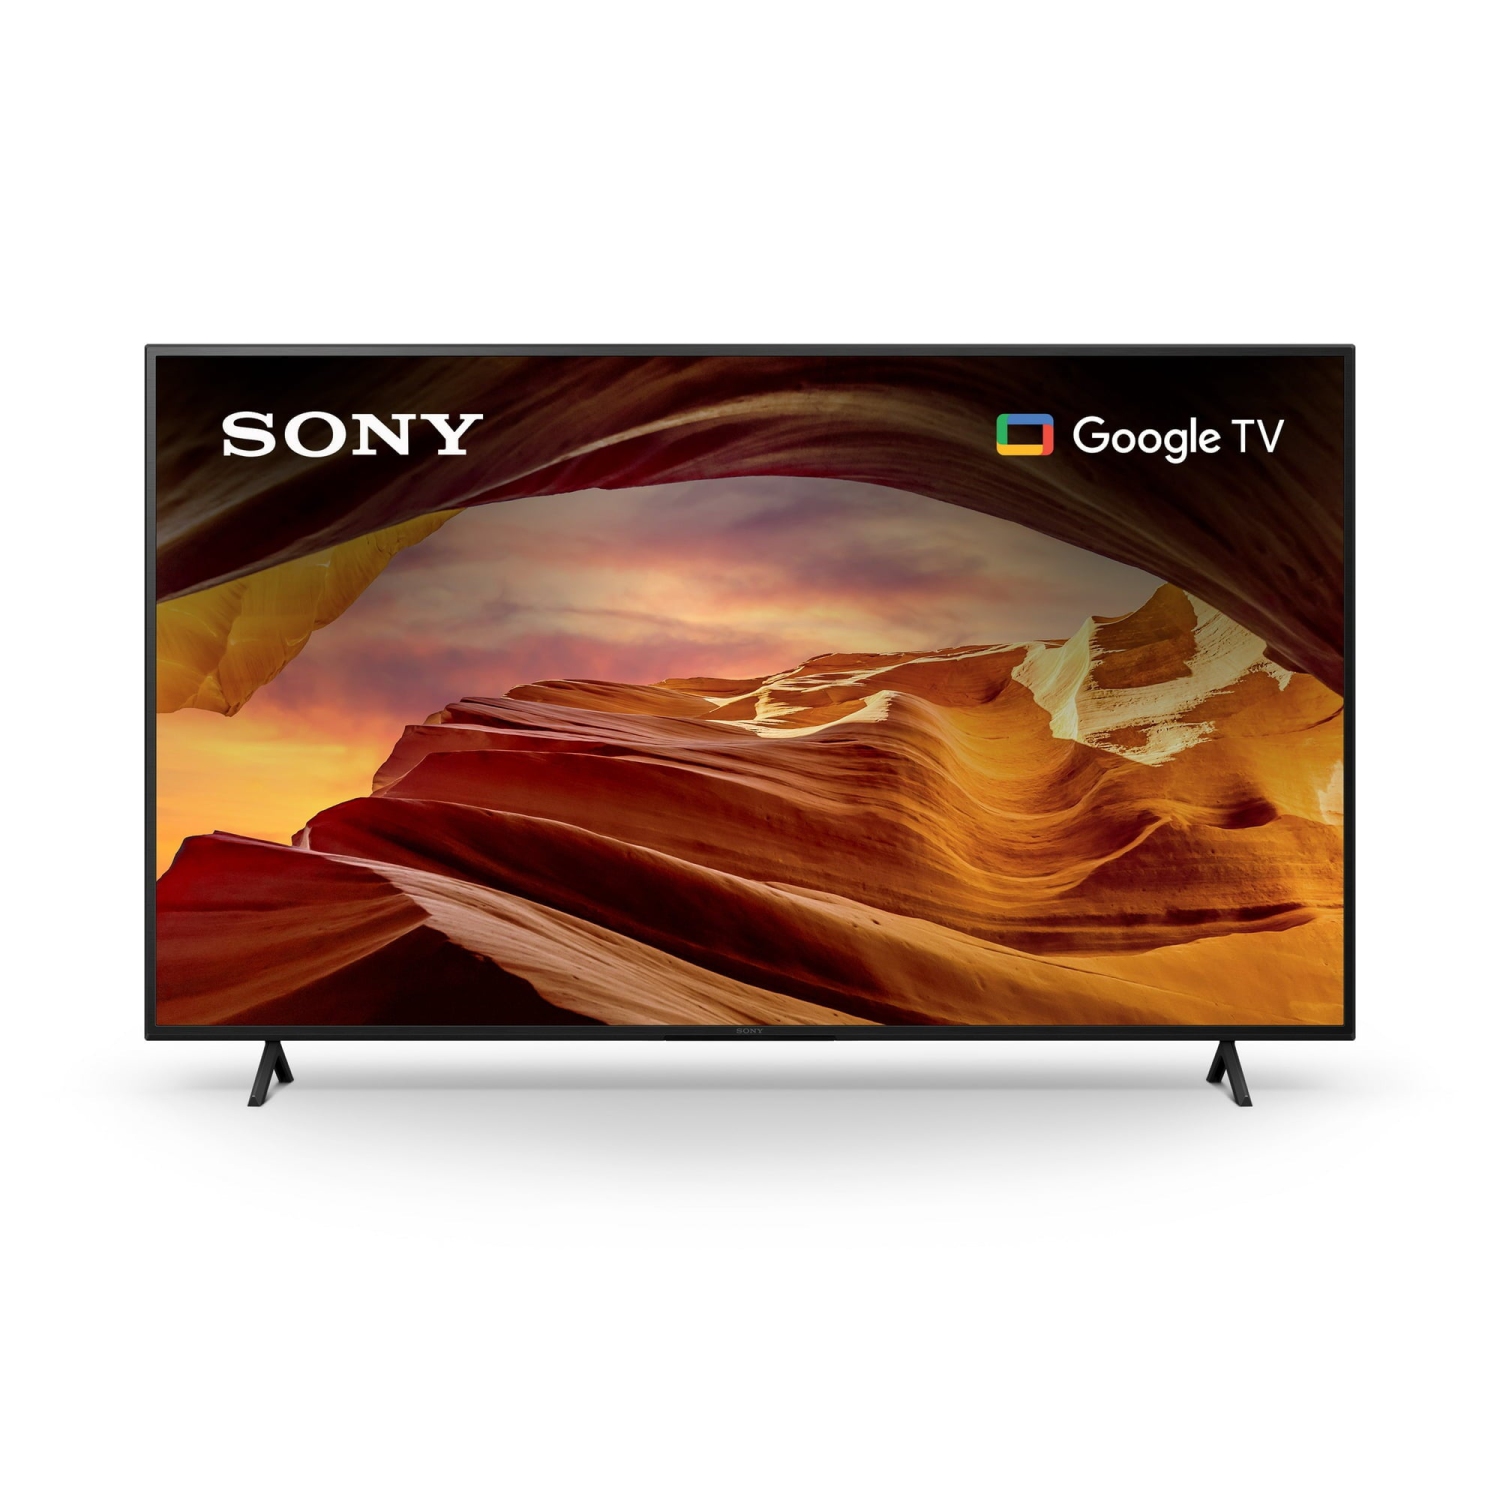 REFURBISHED(Good) - Sony 85” Class X77L 4K Ultra HD LED Smart Google TV (KD85X77L)